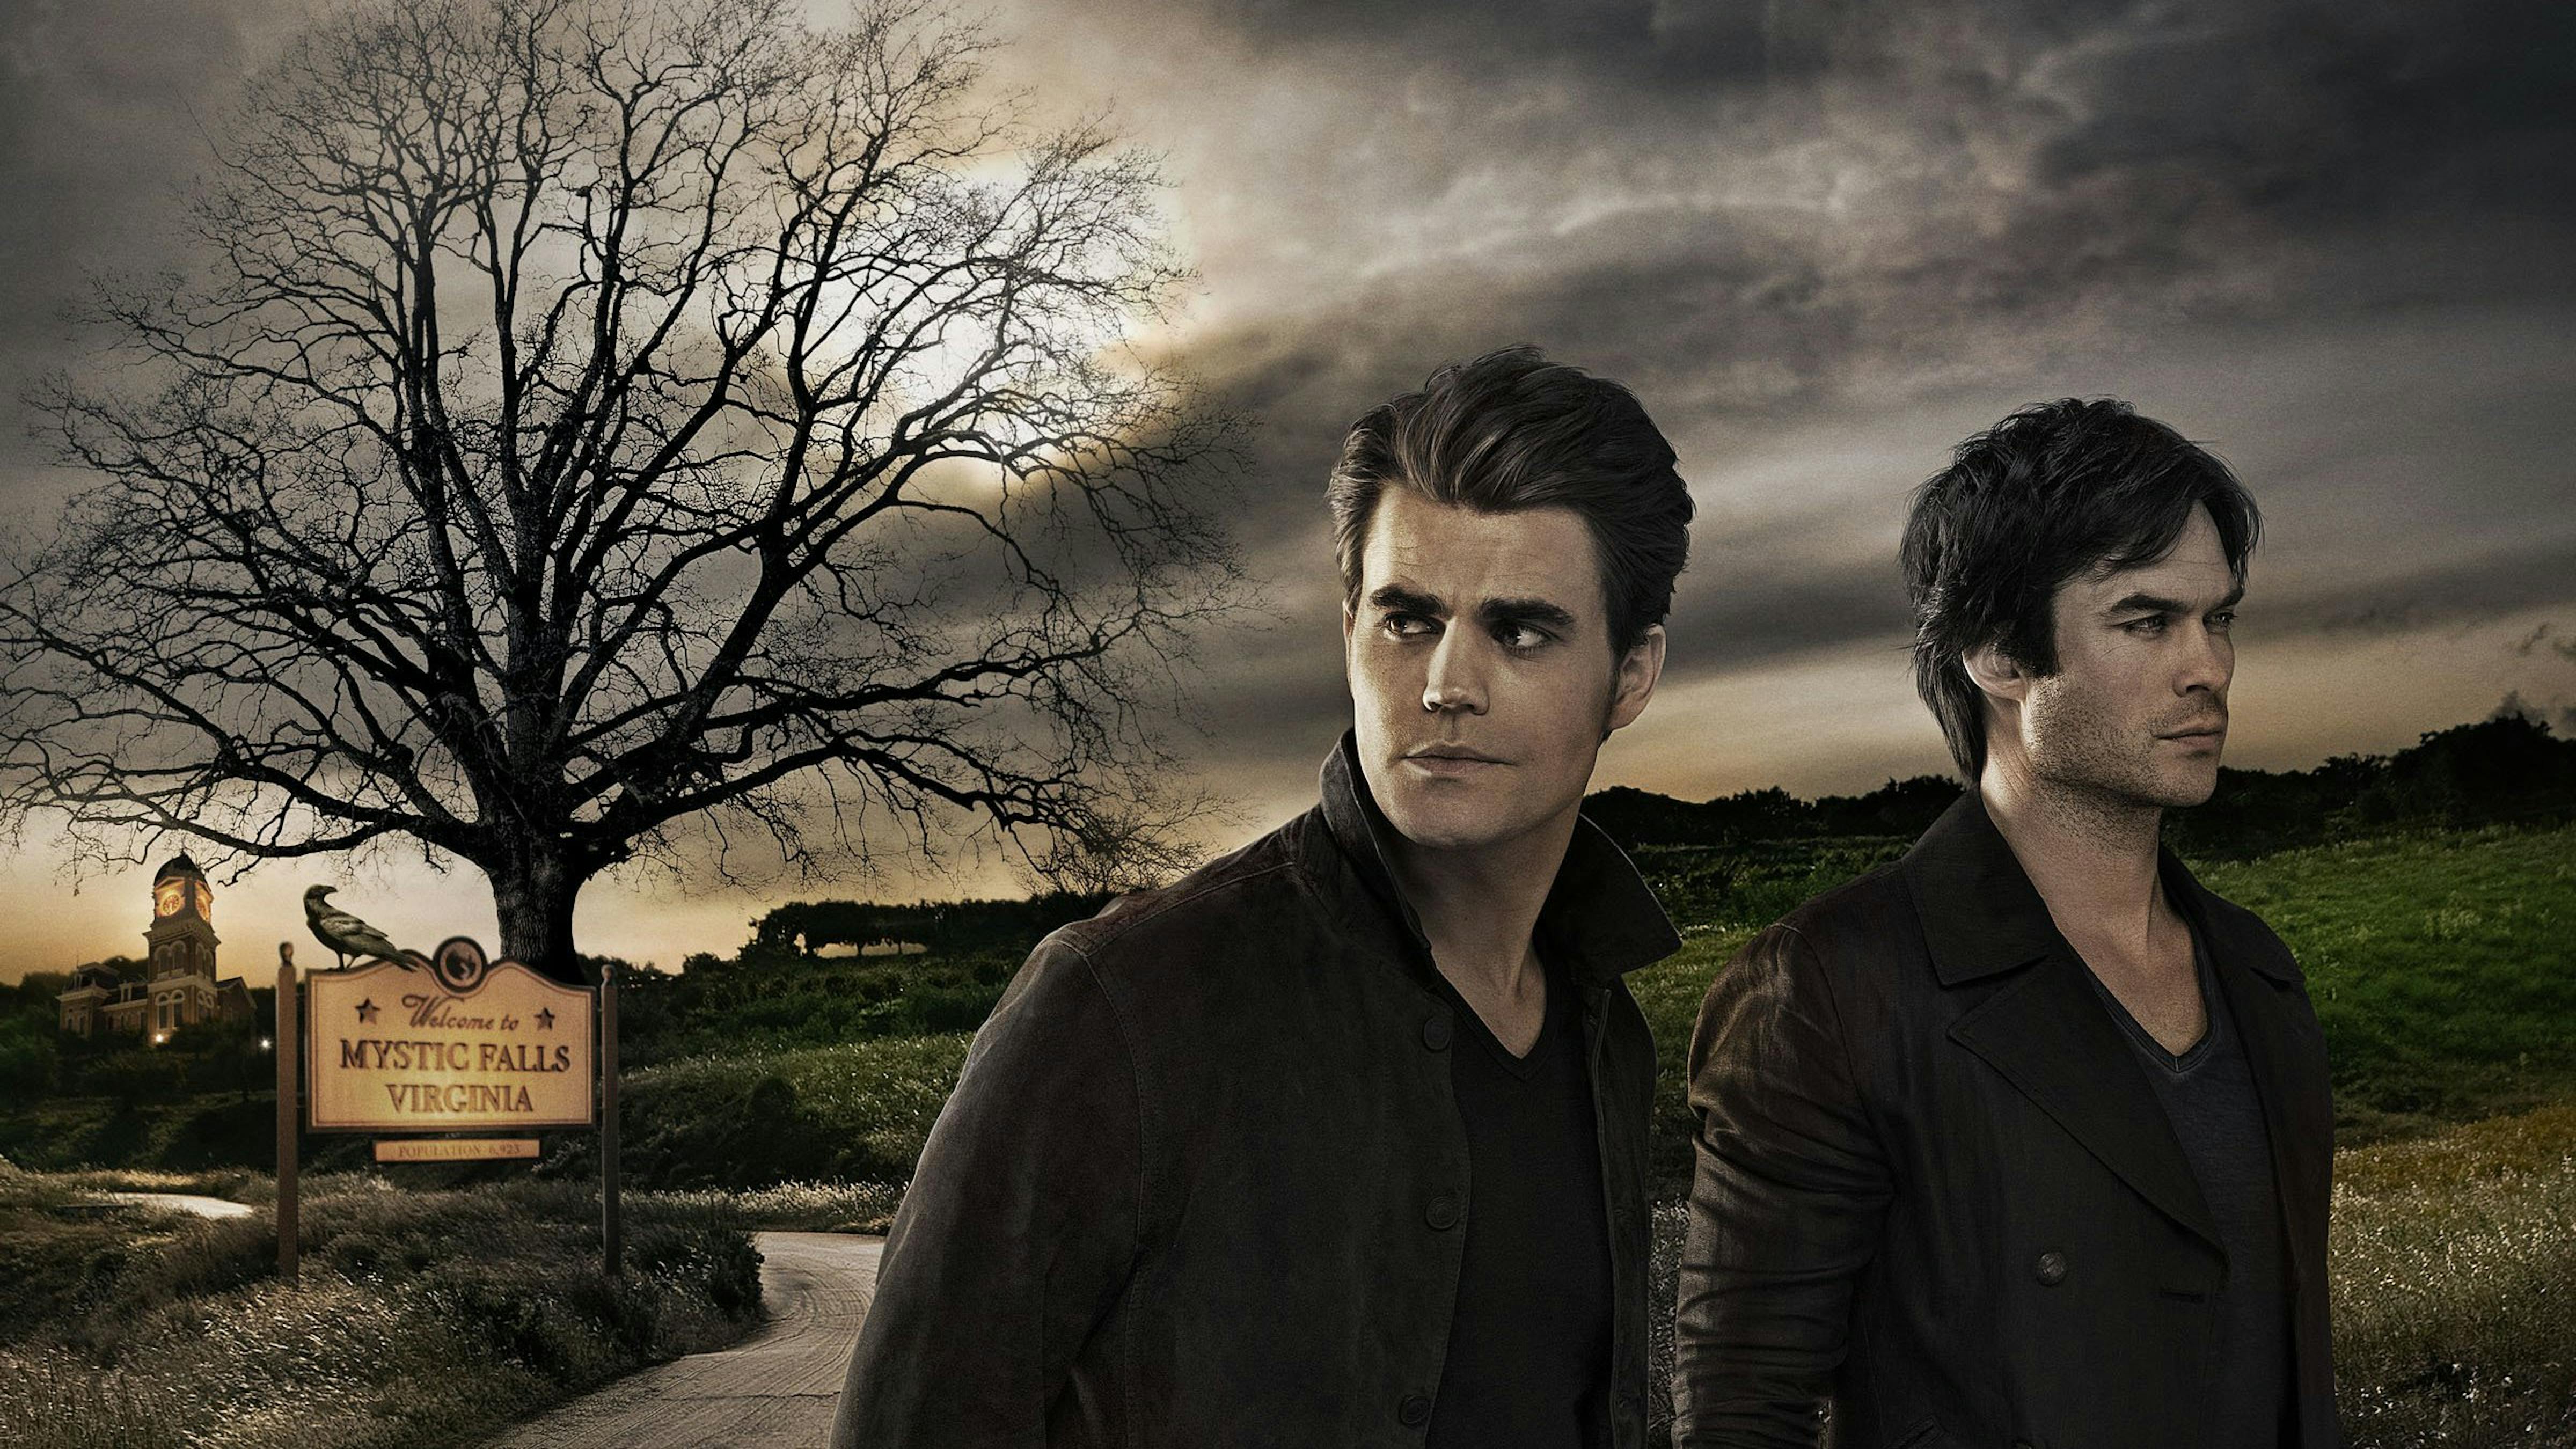 2ª Temporada, Wiki Vampire Diaries